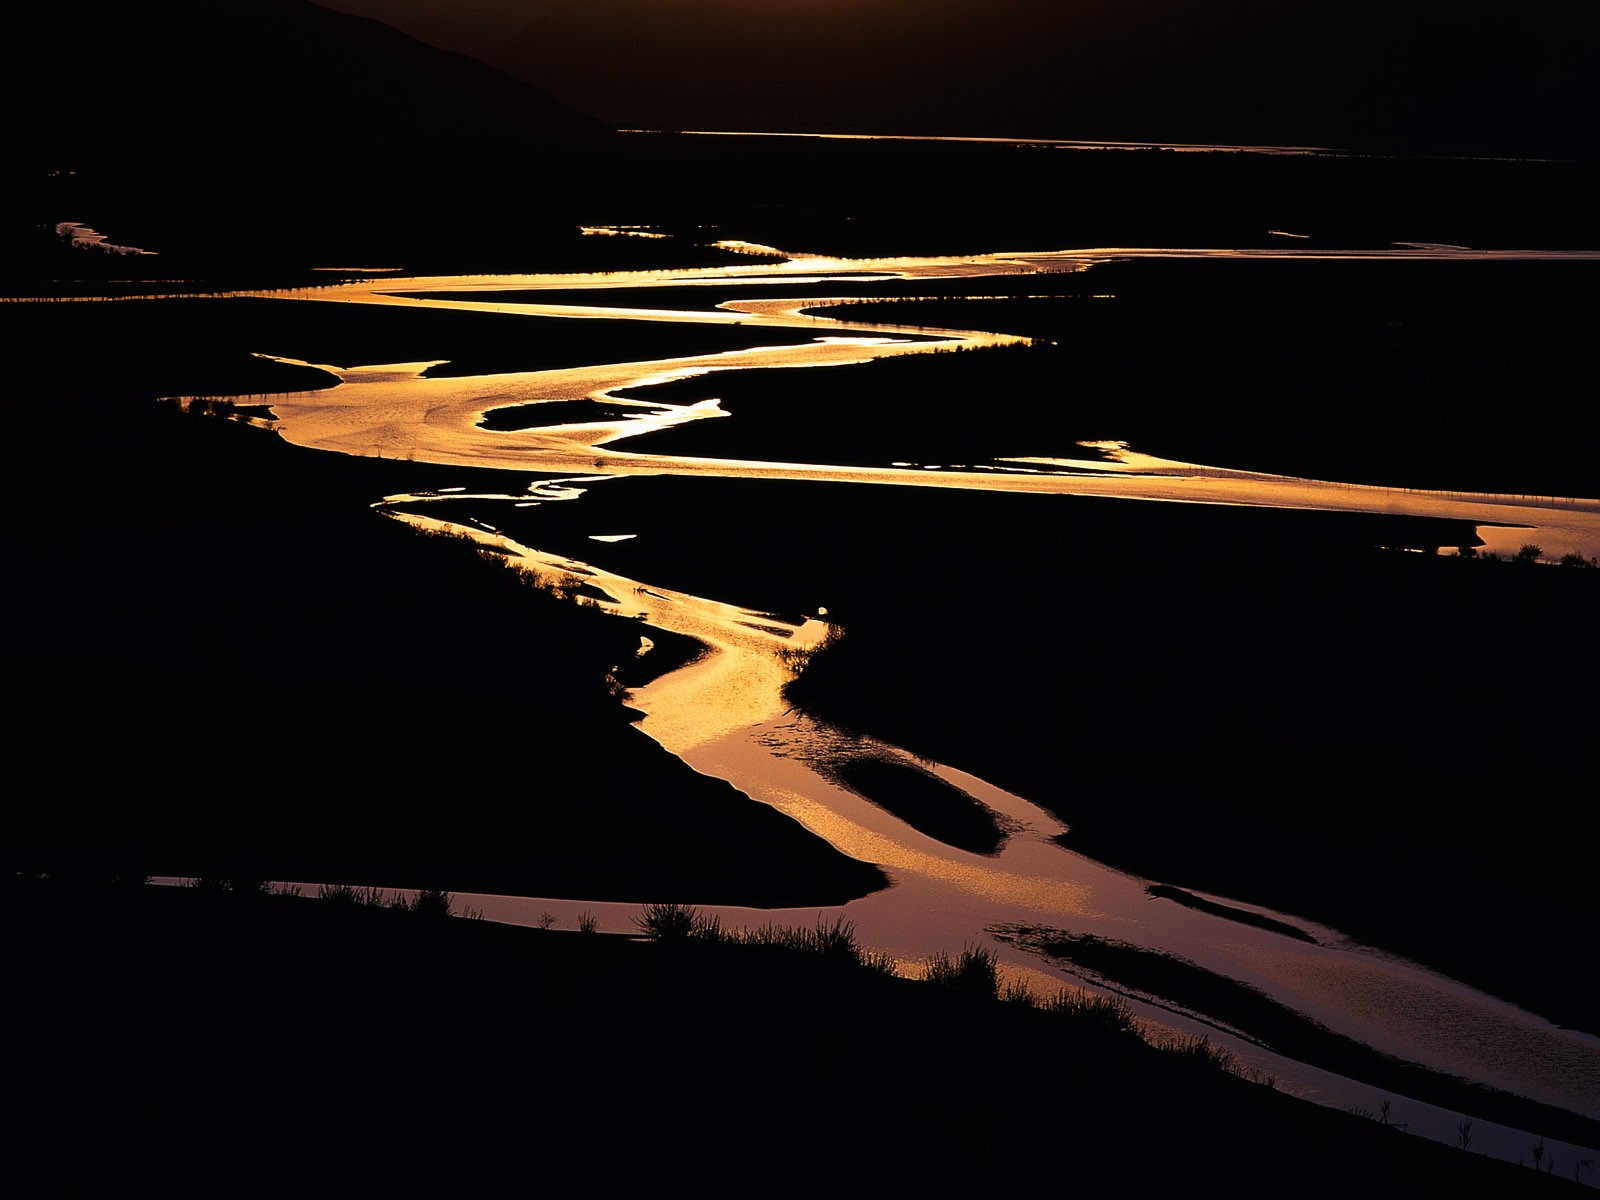 Fond d'écran paysage exquis chinois #12 - 1600x1200